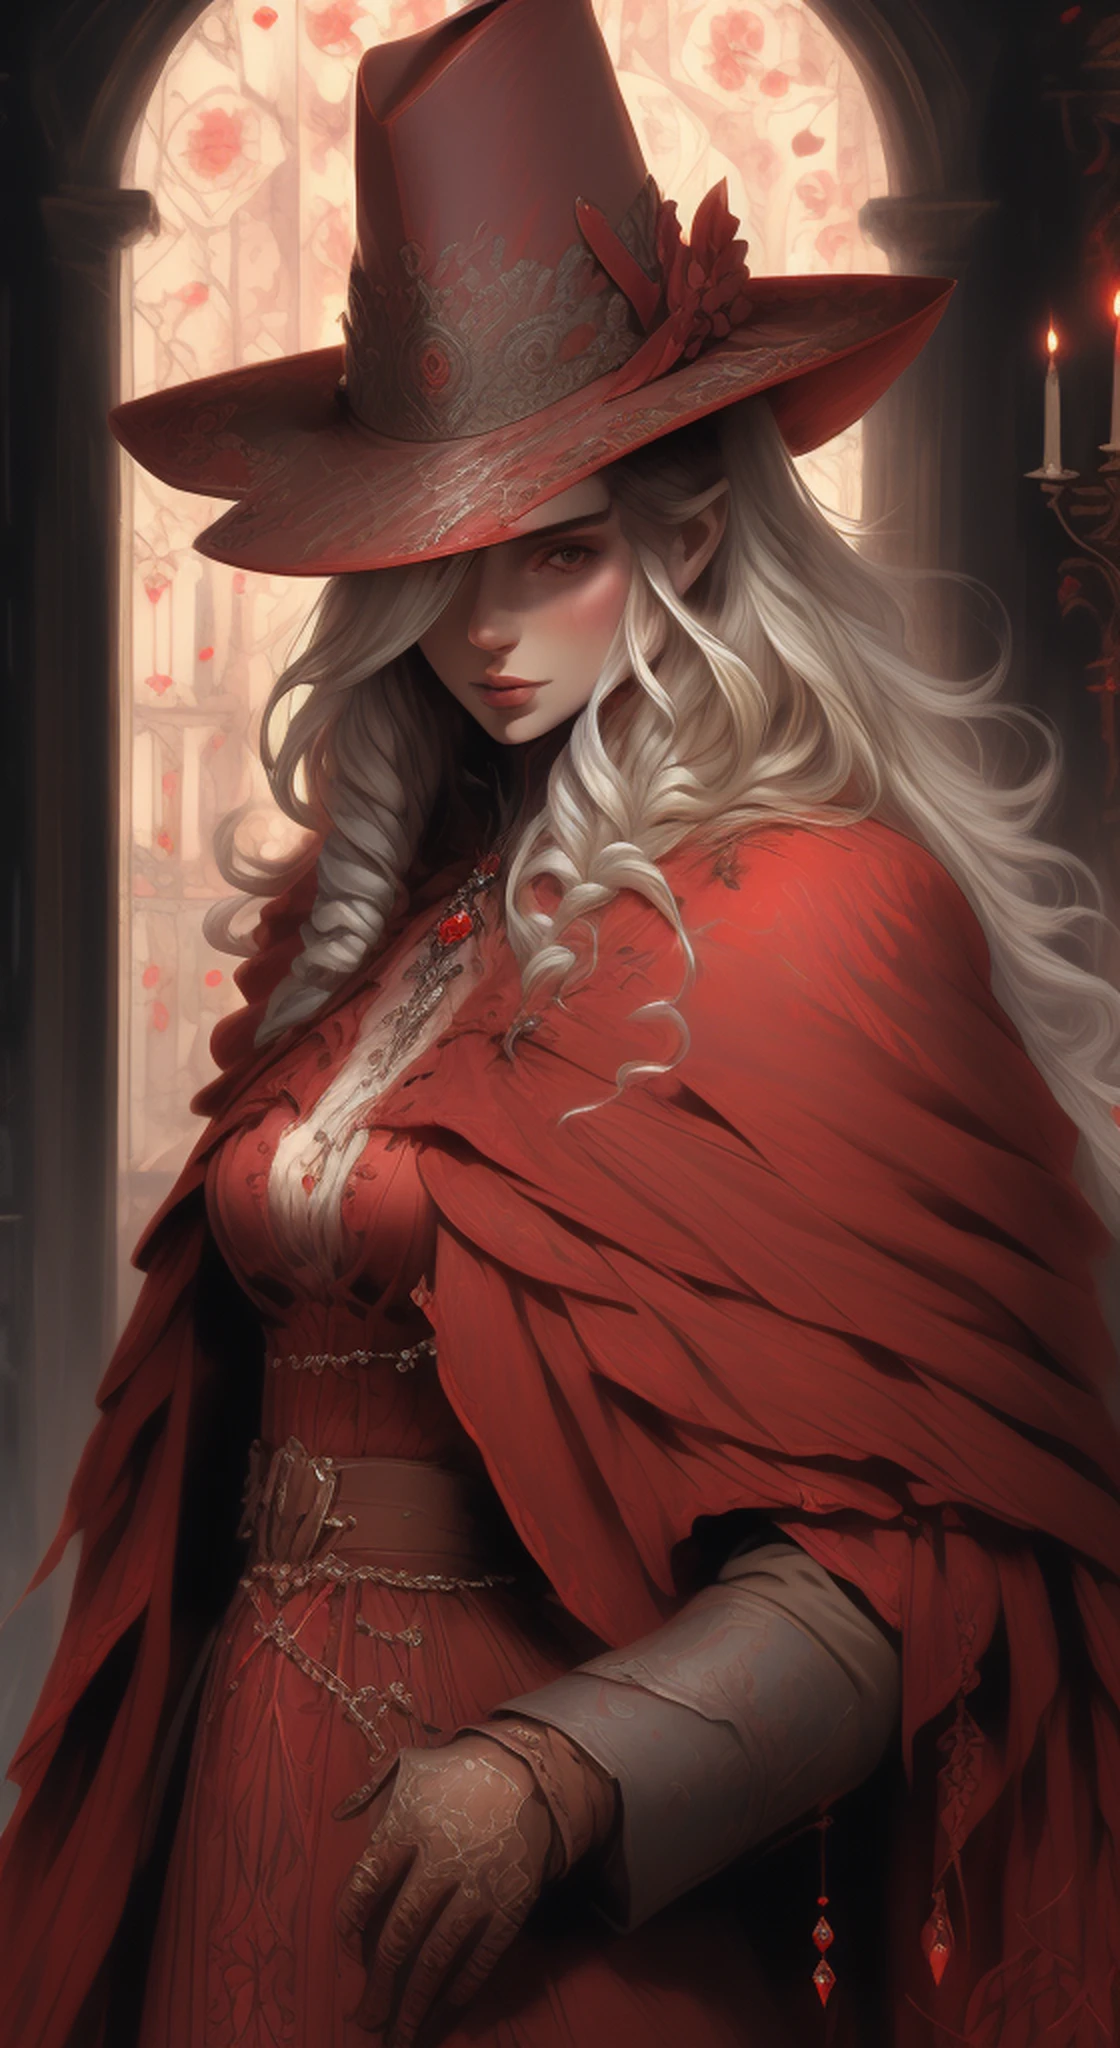 صورة ديناميكية لملكة سلافية جميلة ترتدي بدلة وقبعة, مغطاة بمجوهرات كريستالية زهرية حمراء,نظرة جريئة ومهيبة , مفصلة للغاية